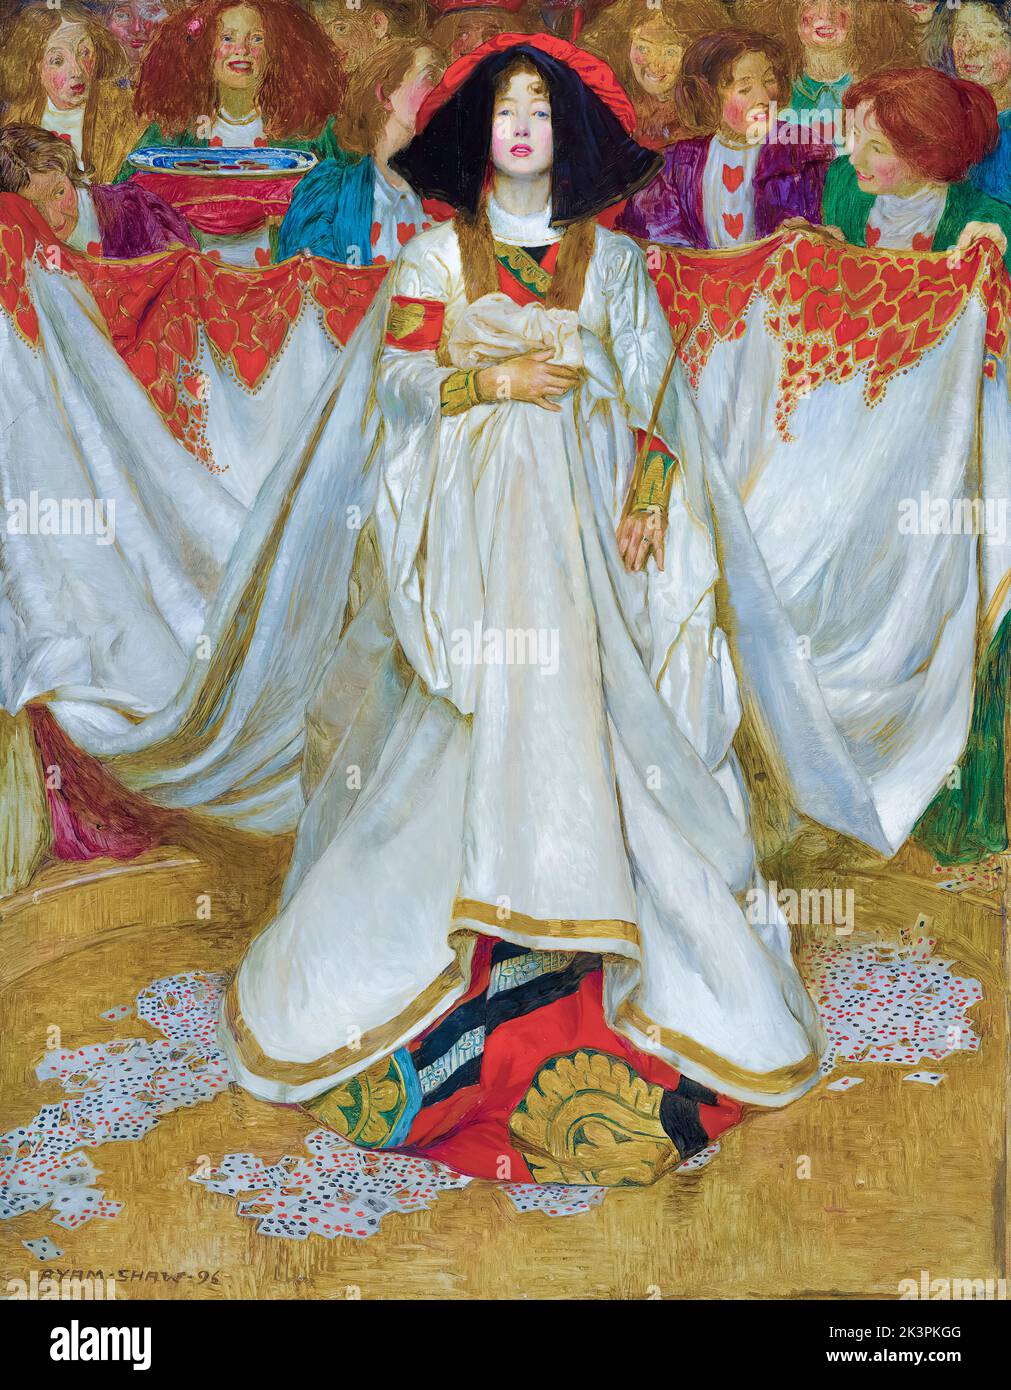 La Reina de los Corazones, pintura al óleo sobre lienzo de Byam Shaw, 1896 Foto de stock